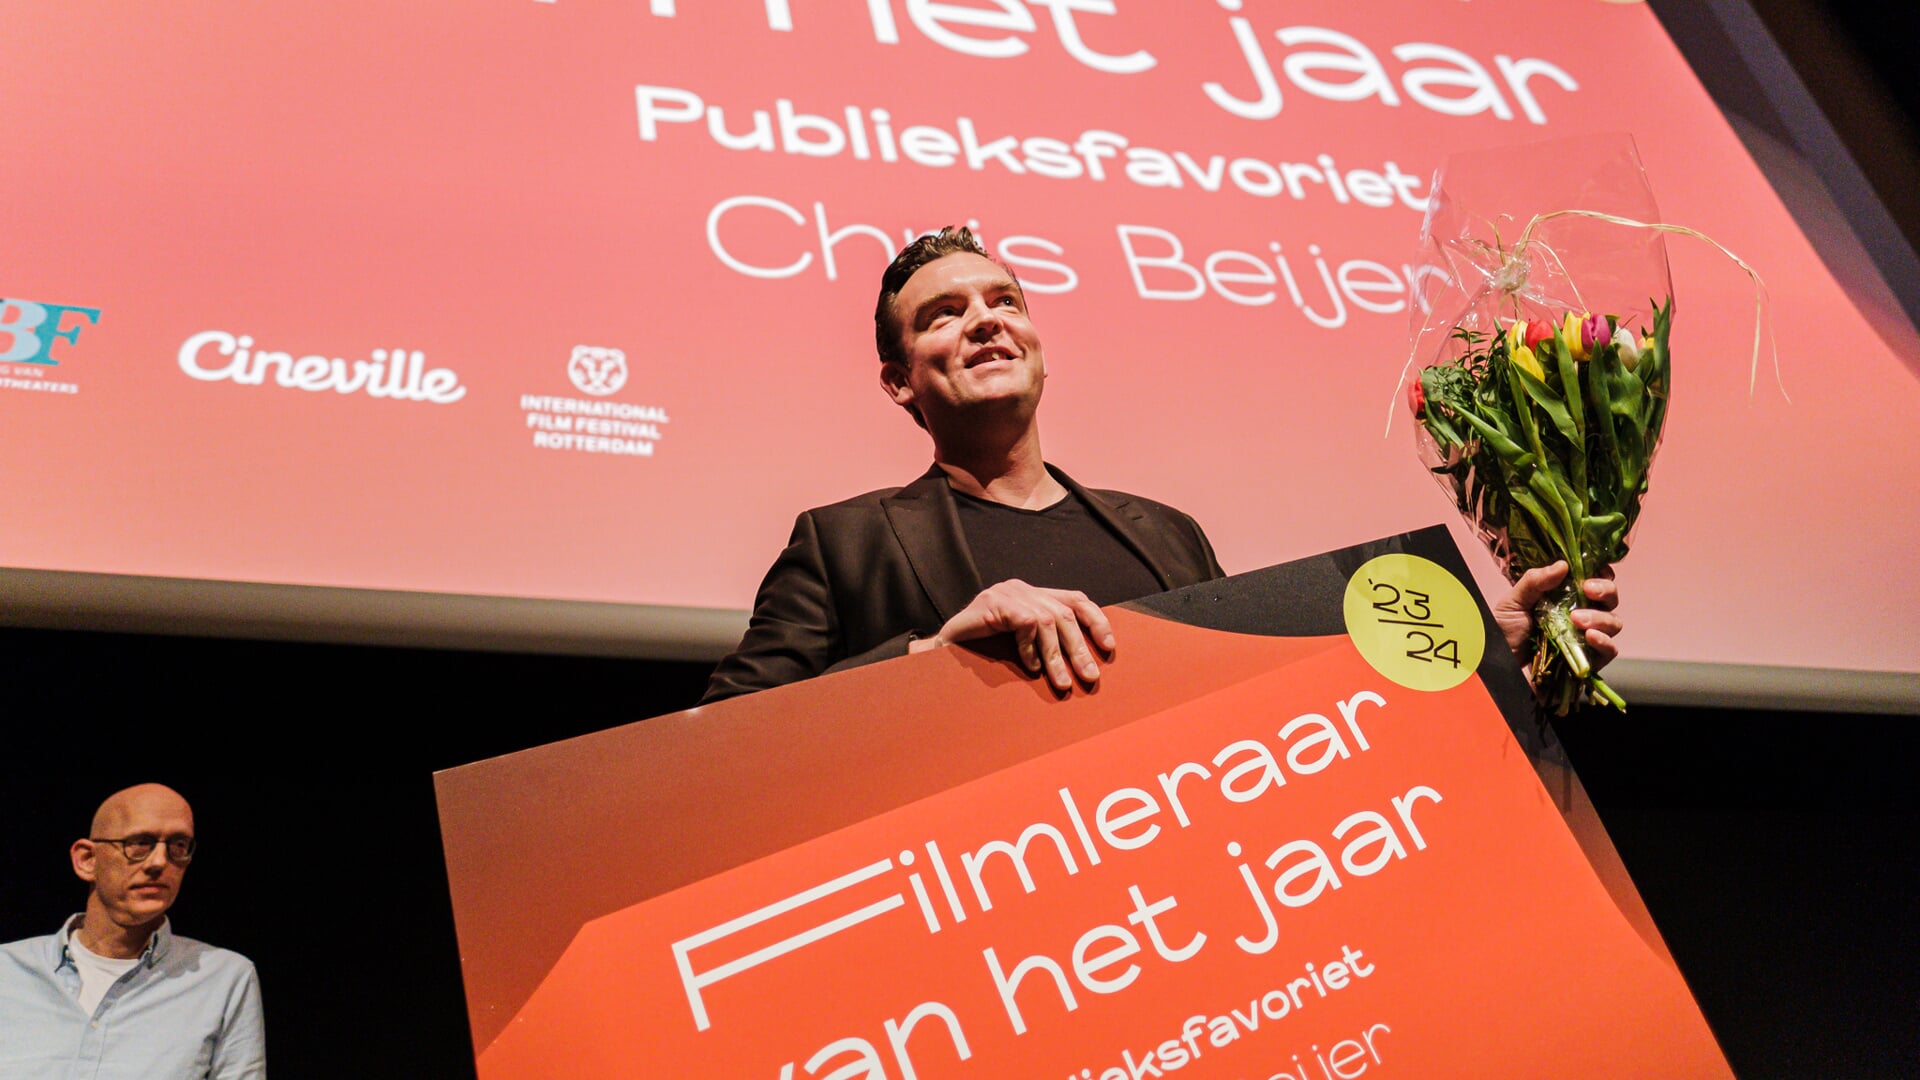 Chris Beijer met de publieksprijs Filmleraar van het Jaar ‘23/24.